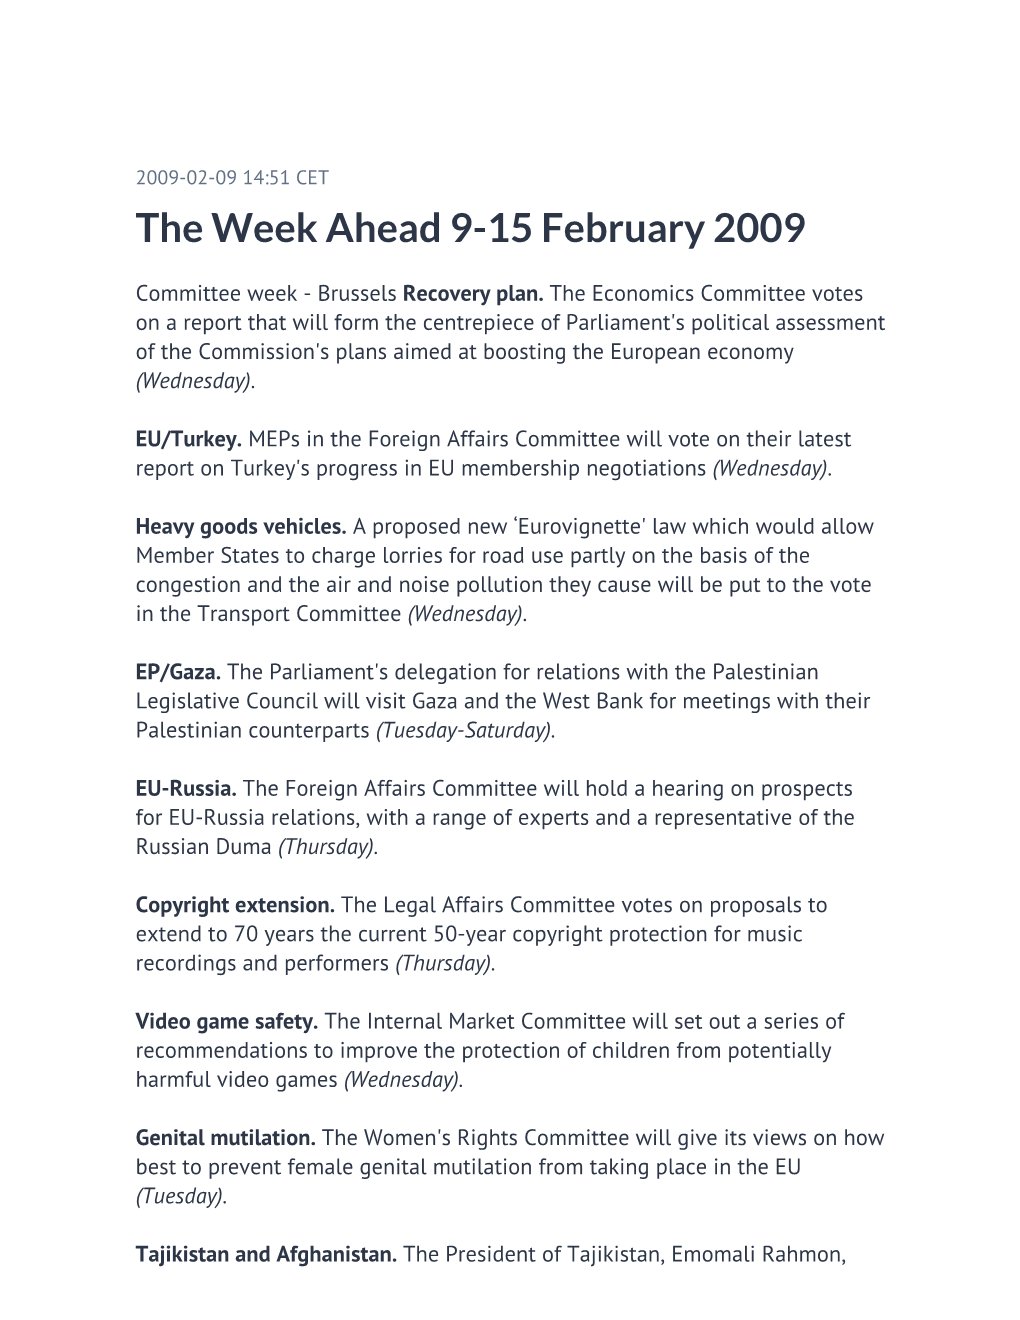 The Week Ahead 9-15 February 2009